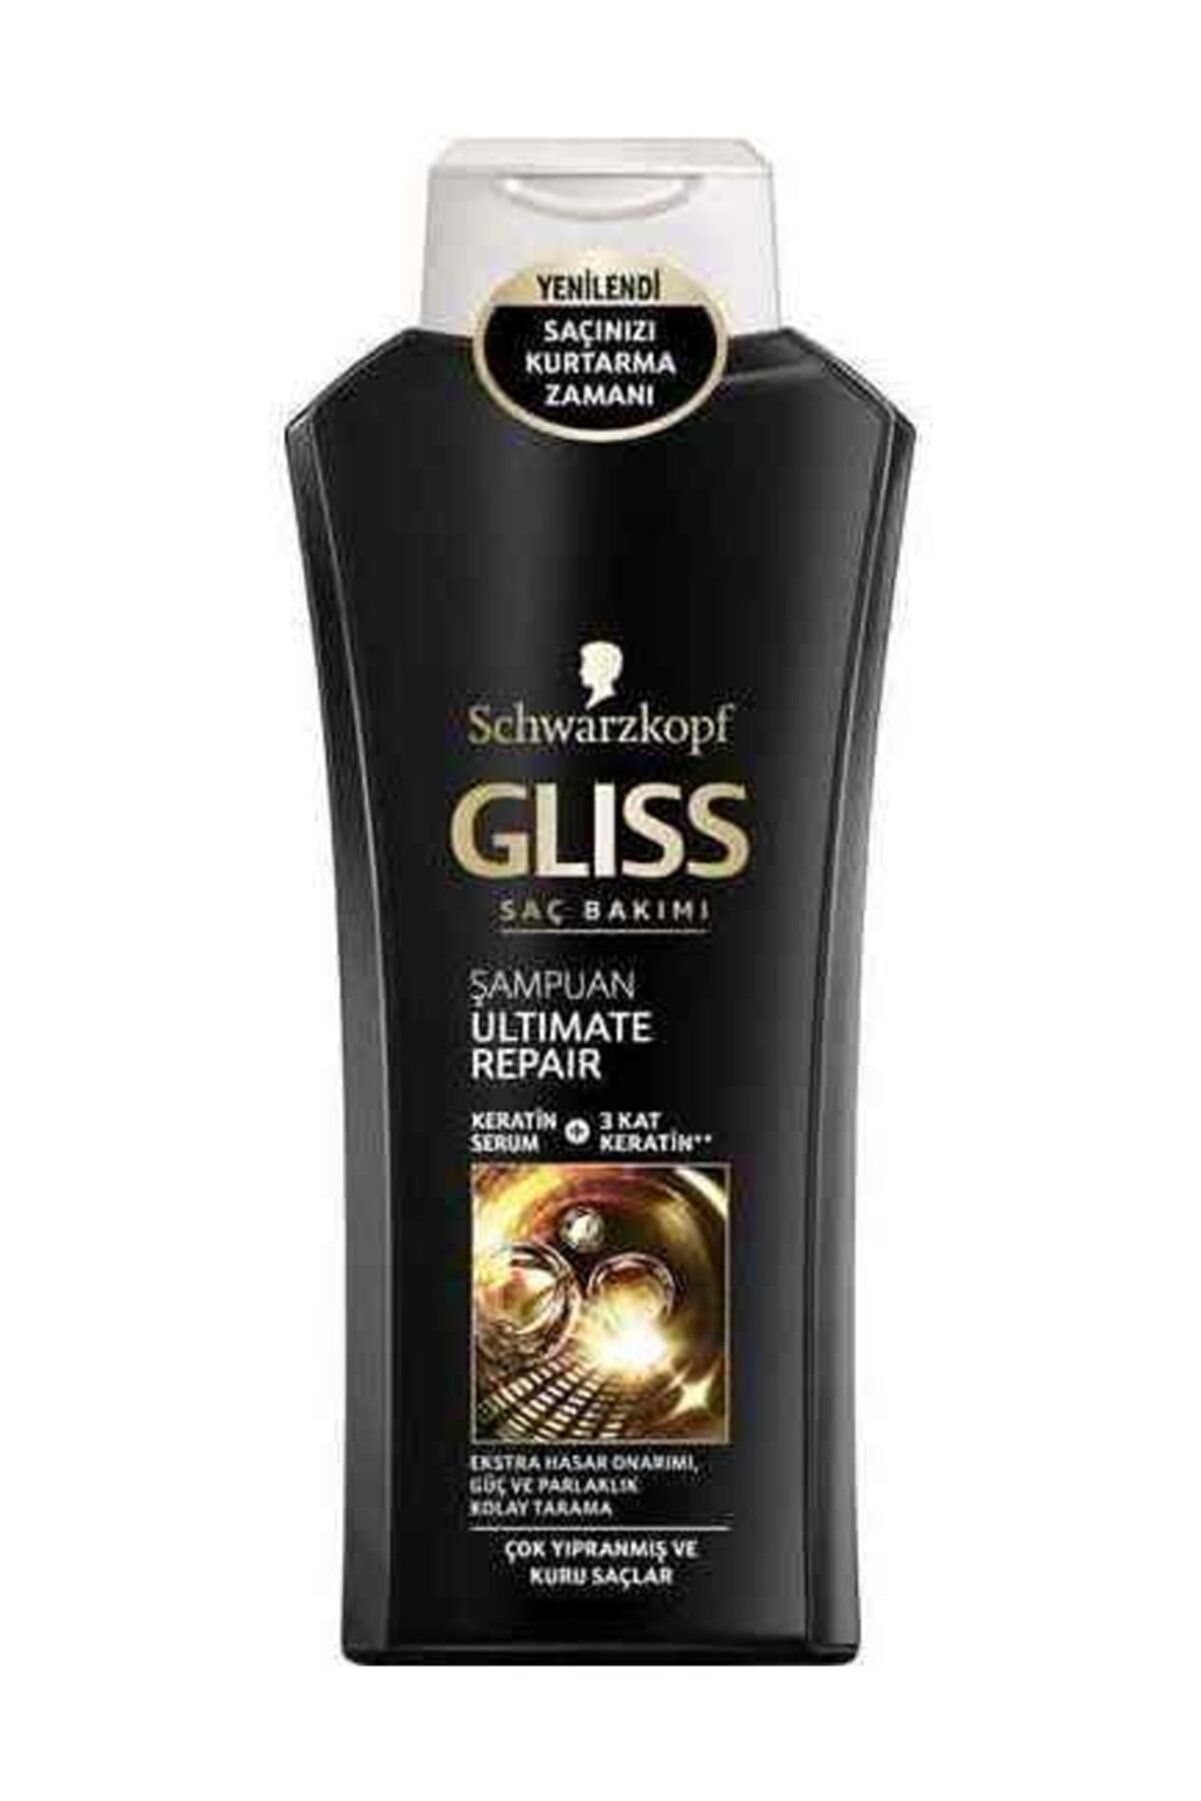 Gliss Şampuan Ultimate Repair 525 ml.